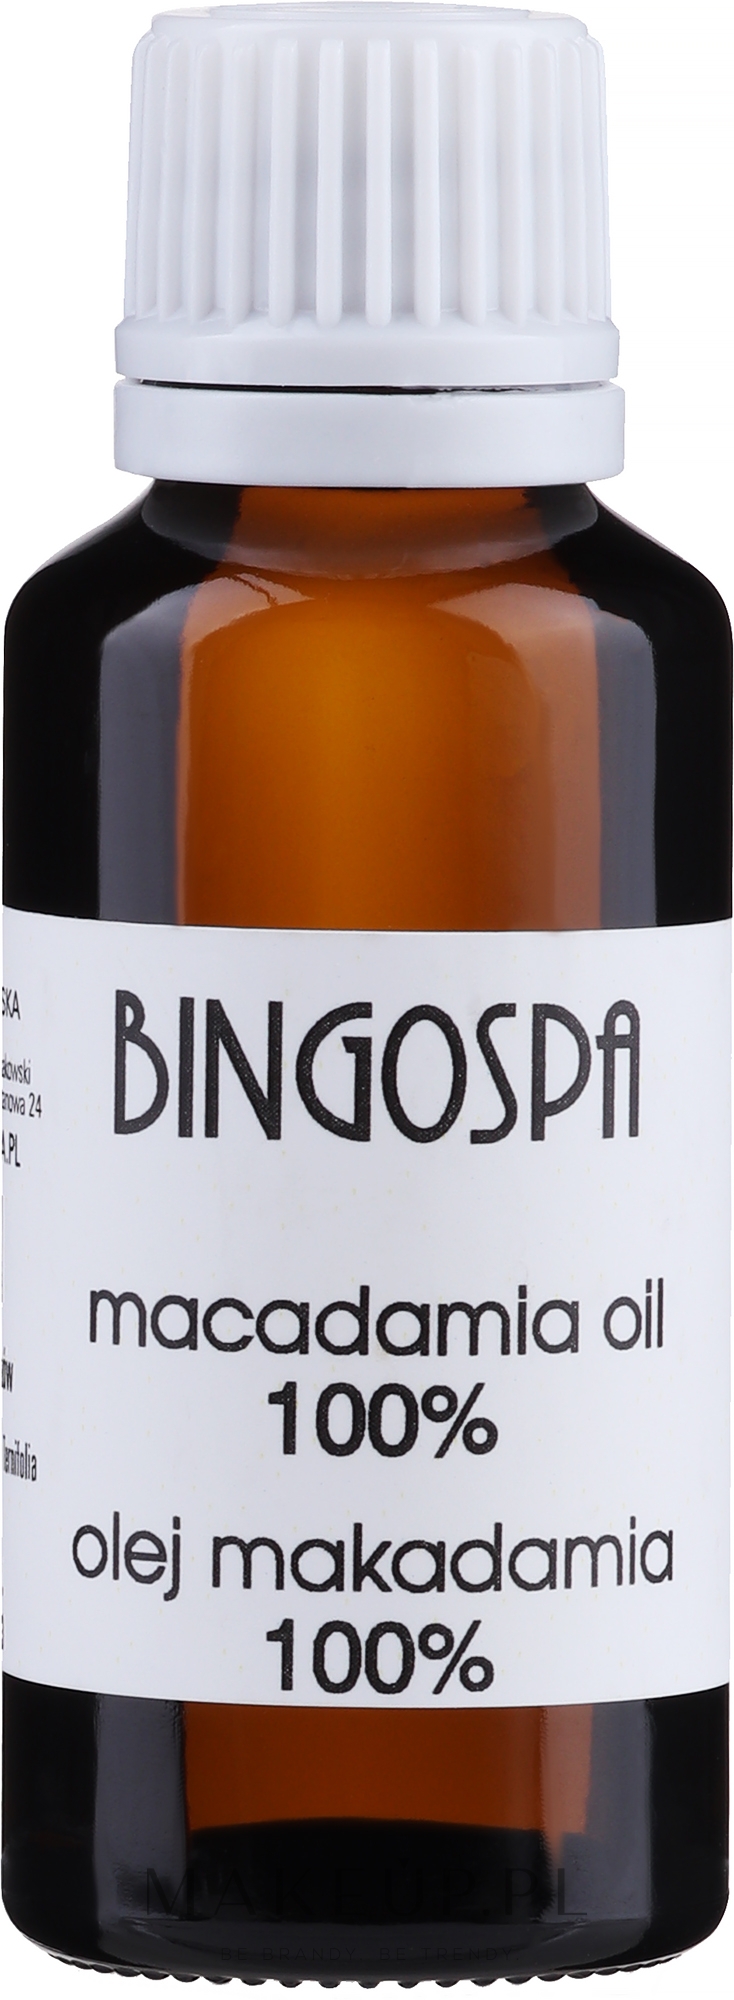 Olej makadamia 100% - BingoSpa Macadamia Oil 100% — Zdjęcie 30 ml